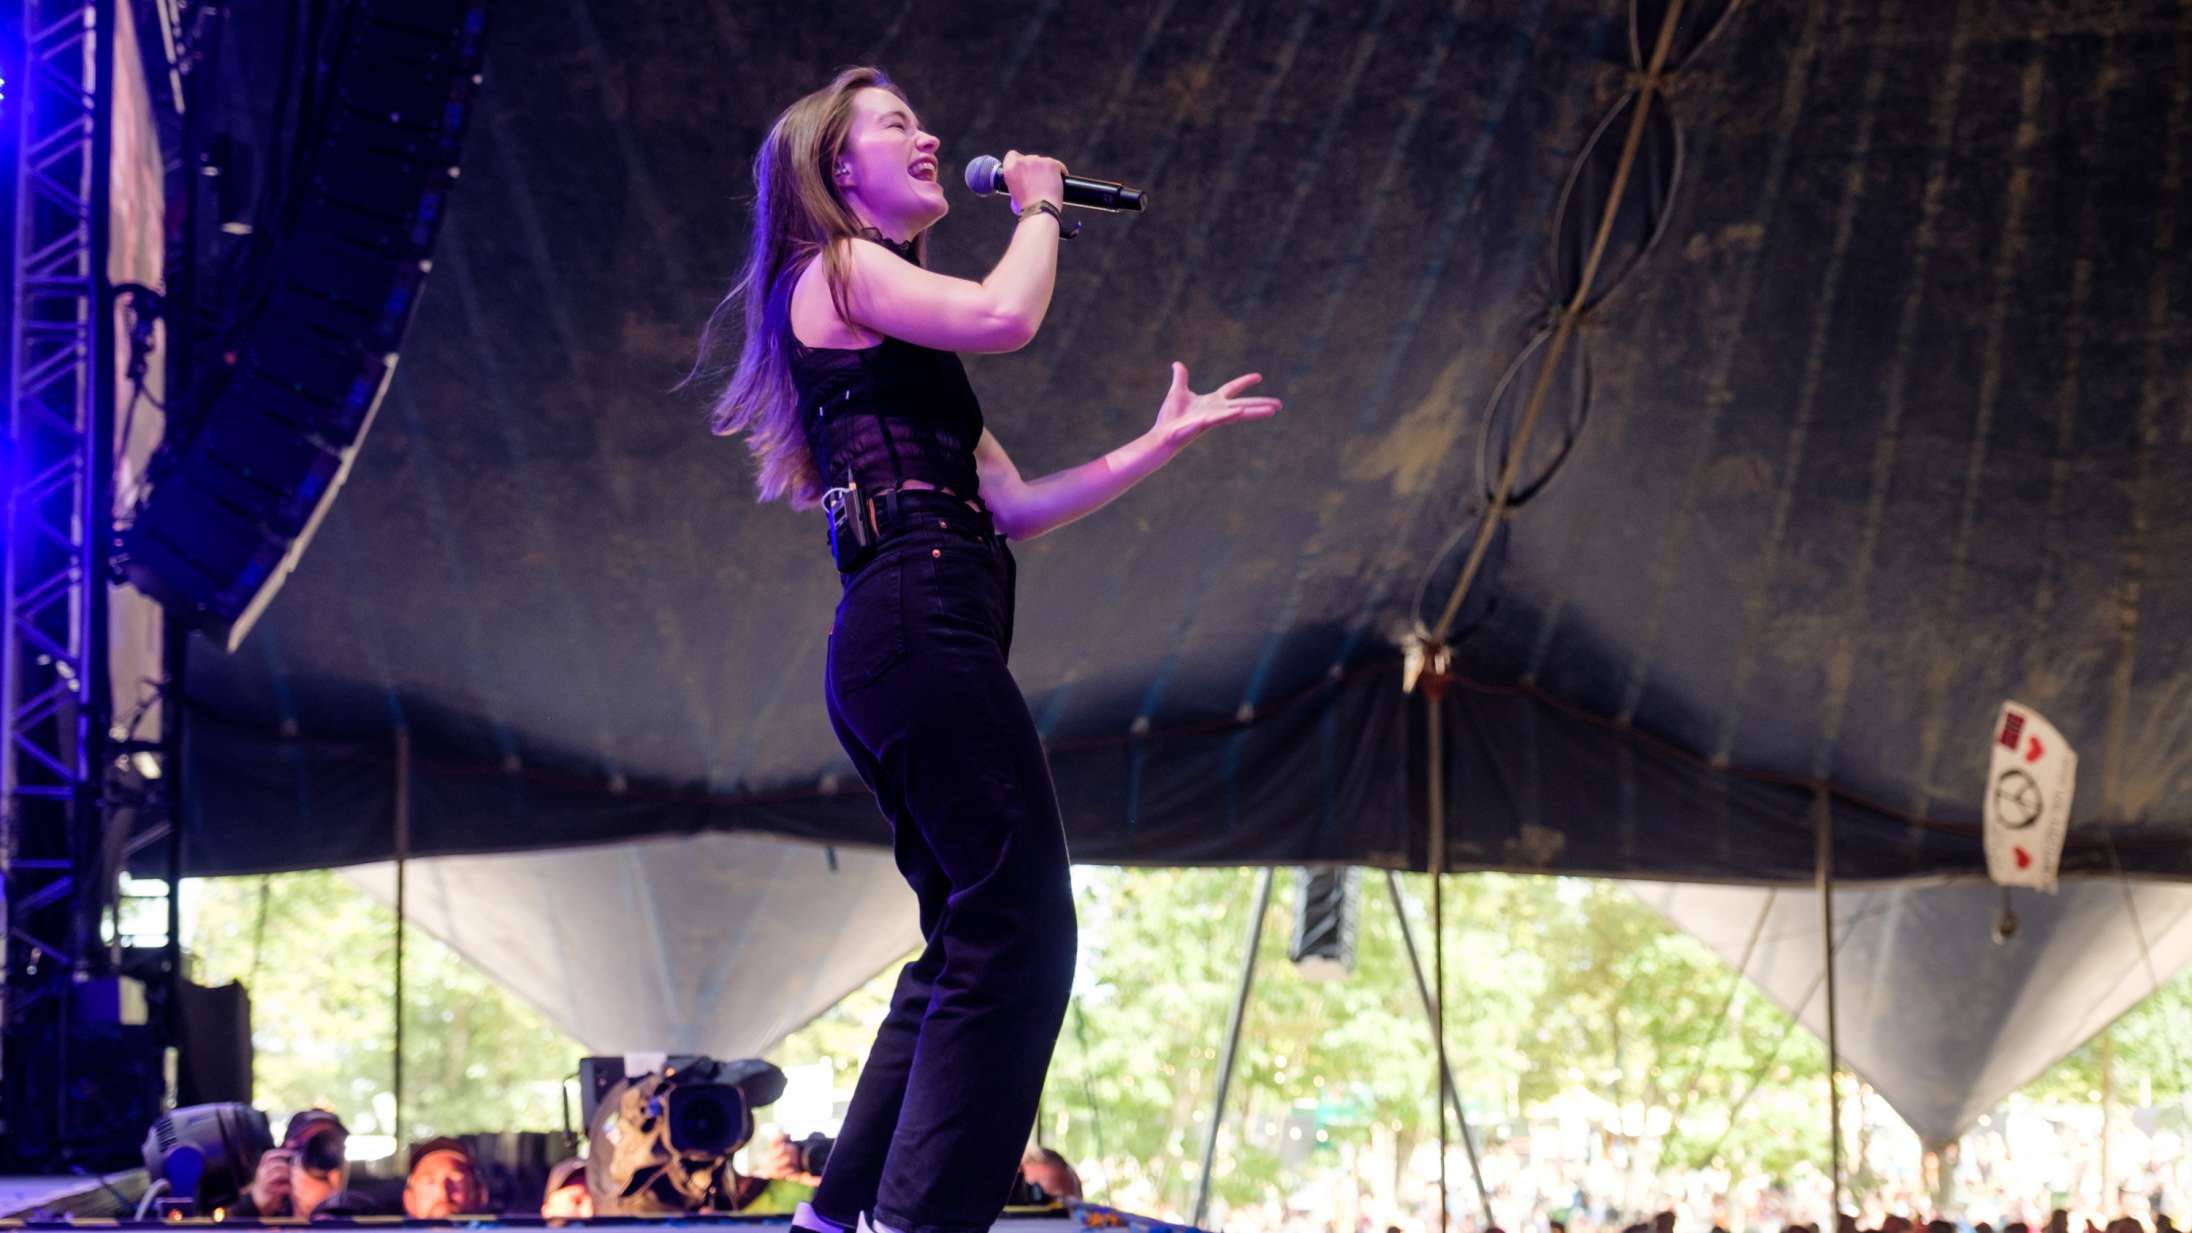 Fællessang og klokkeklar vokal: Sigrid skabte euforisk stemning på Roskilde Festival